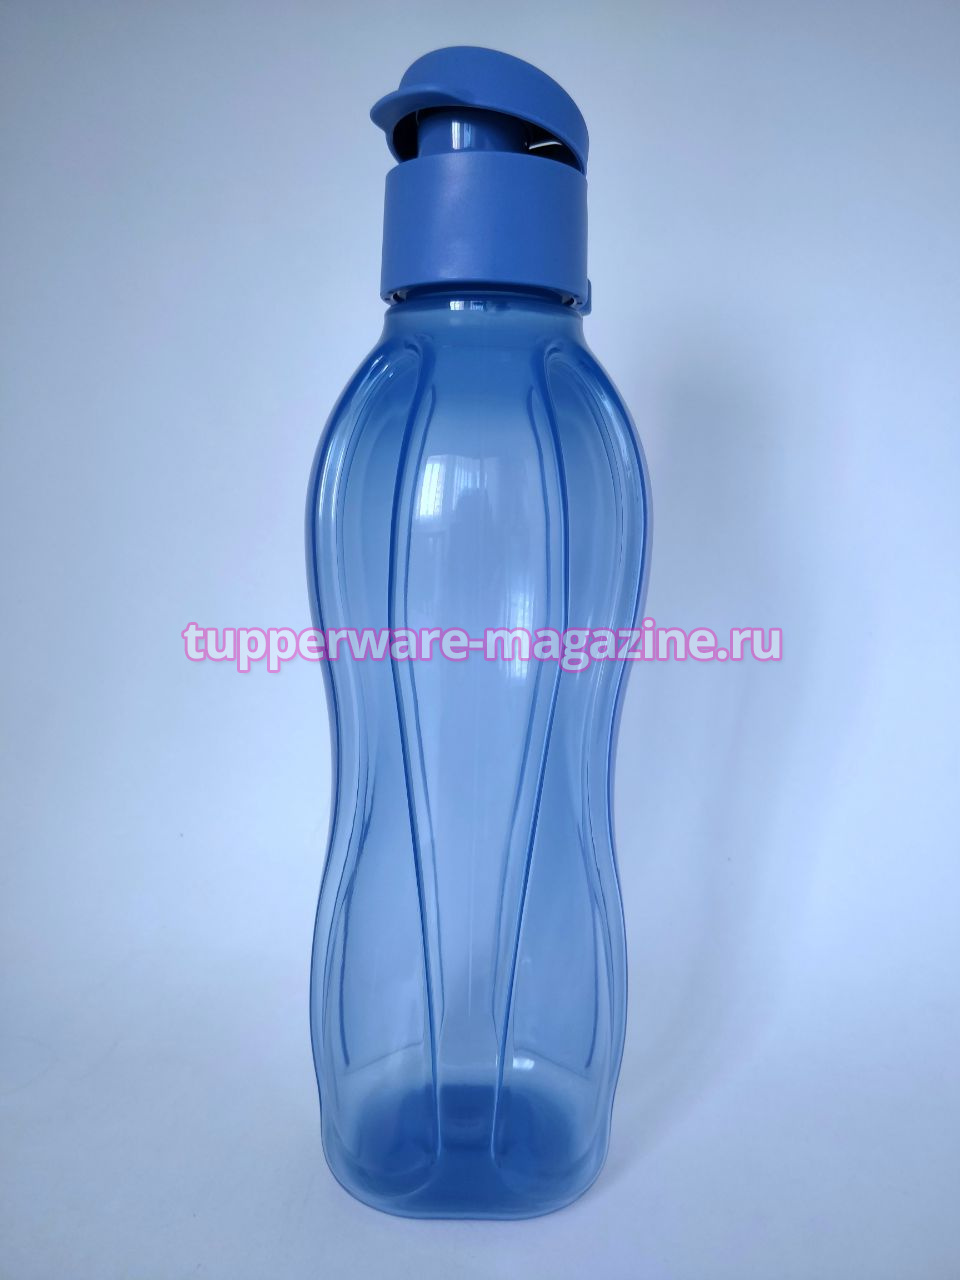 Эко-бутылка (500 мл) в серо-голубом цвете с клапаном